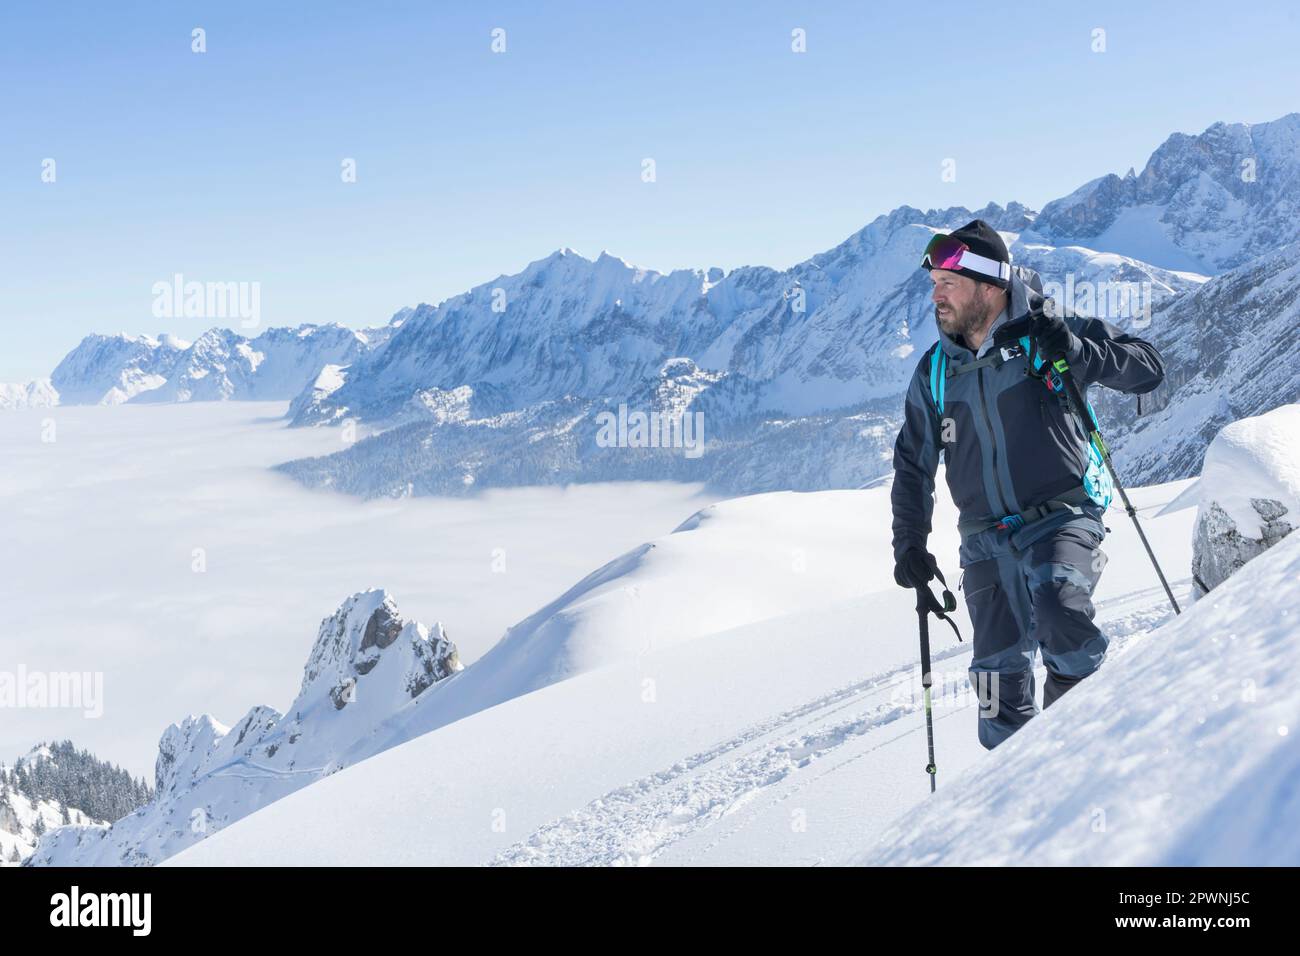 Skieur grimpant la piste de ski, Bavière, Allemagne, Europe Banque D'Images